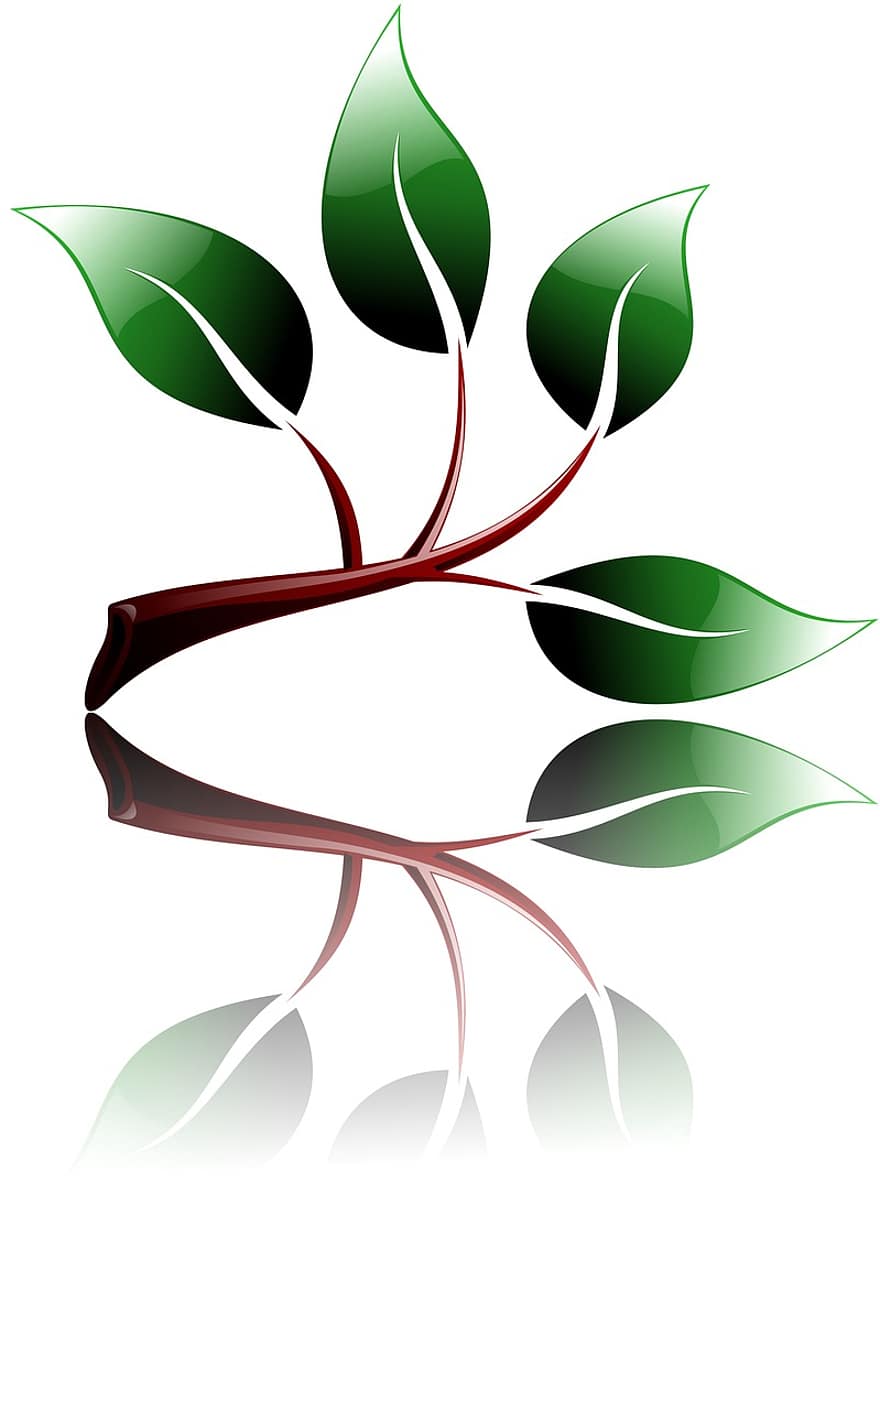 rama, ecológico, ambiente, verde, crecer, aislado, hoja, naturaleza, planta, brote, símbolo